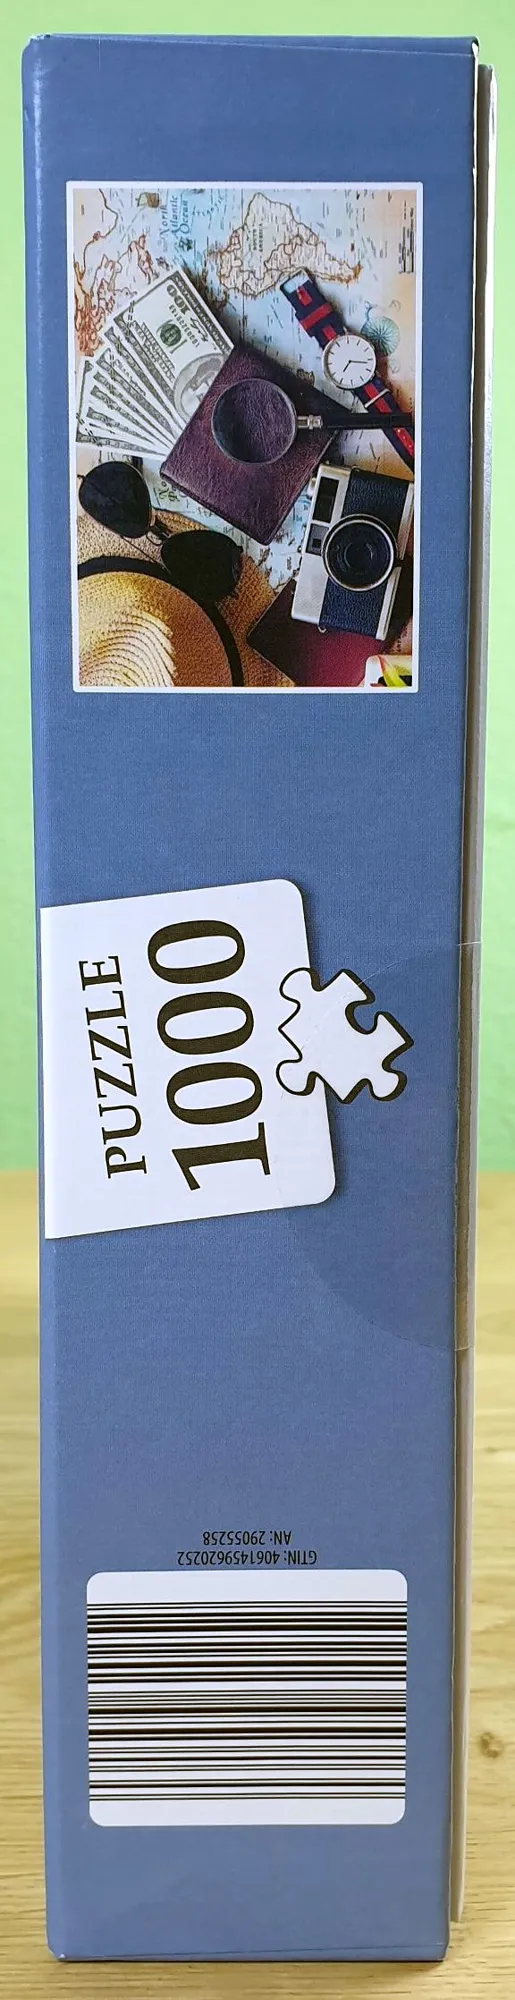 Das "Time to Travel" 1000 Teile Puzzle von der Seite.